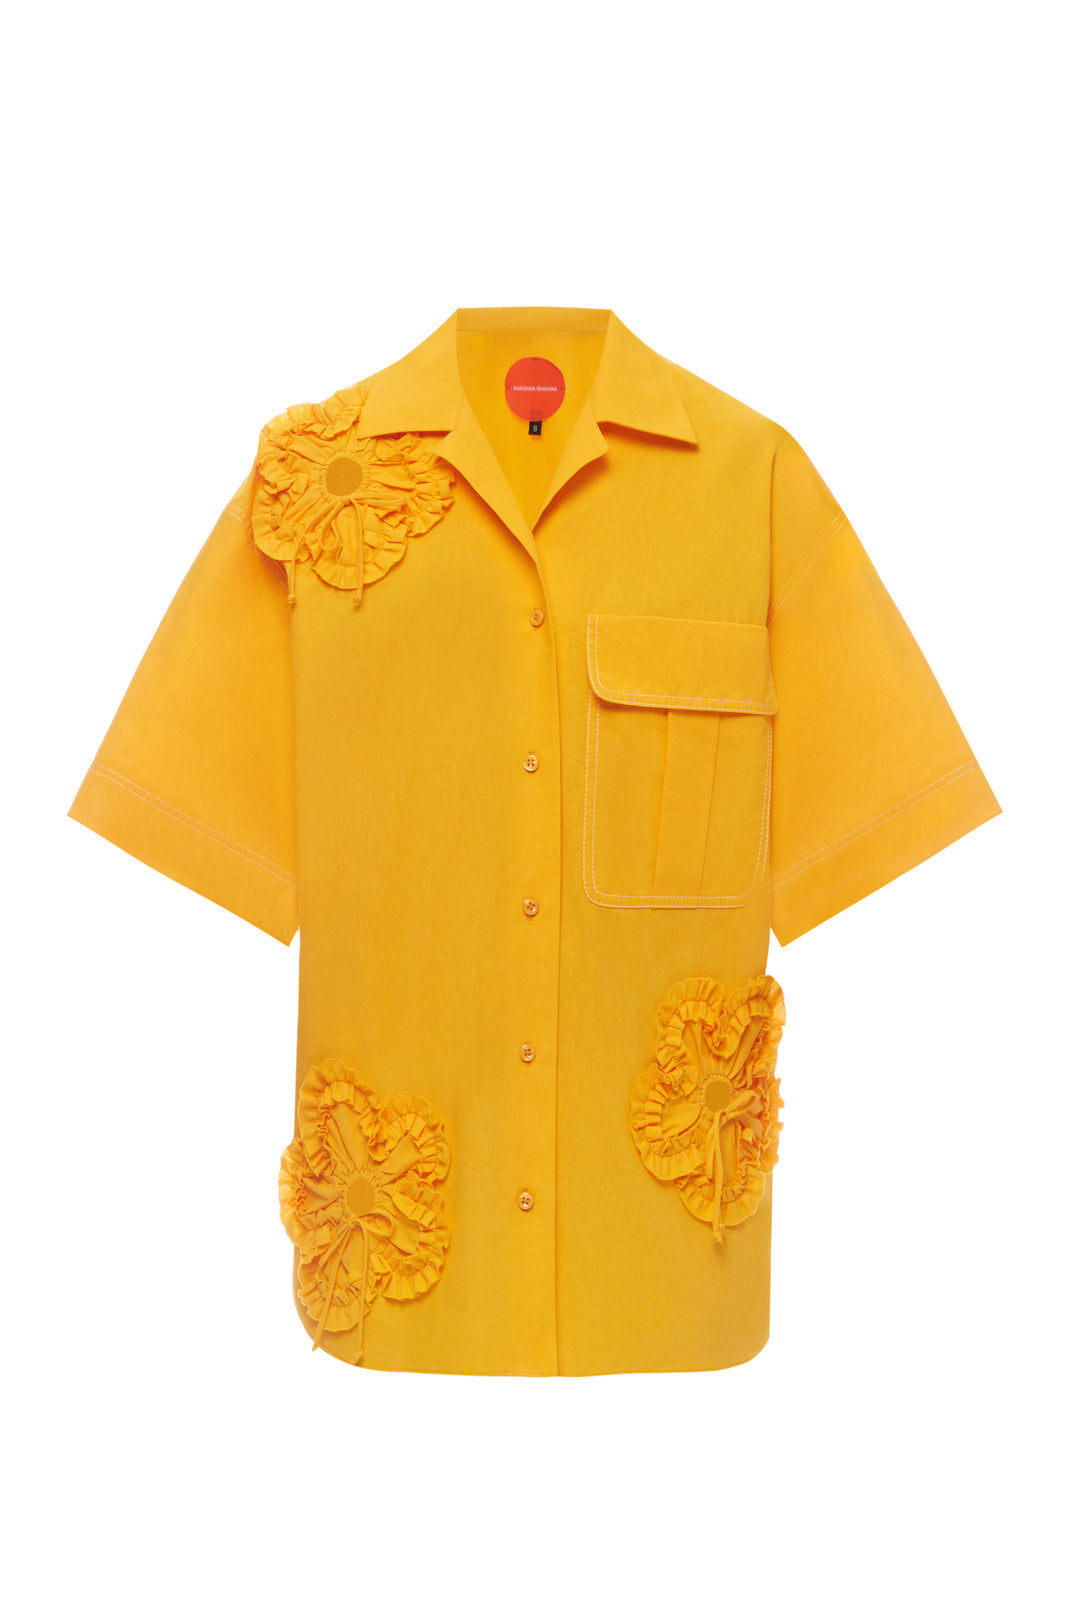 Yellow Flower Power shirt